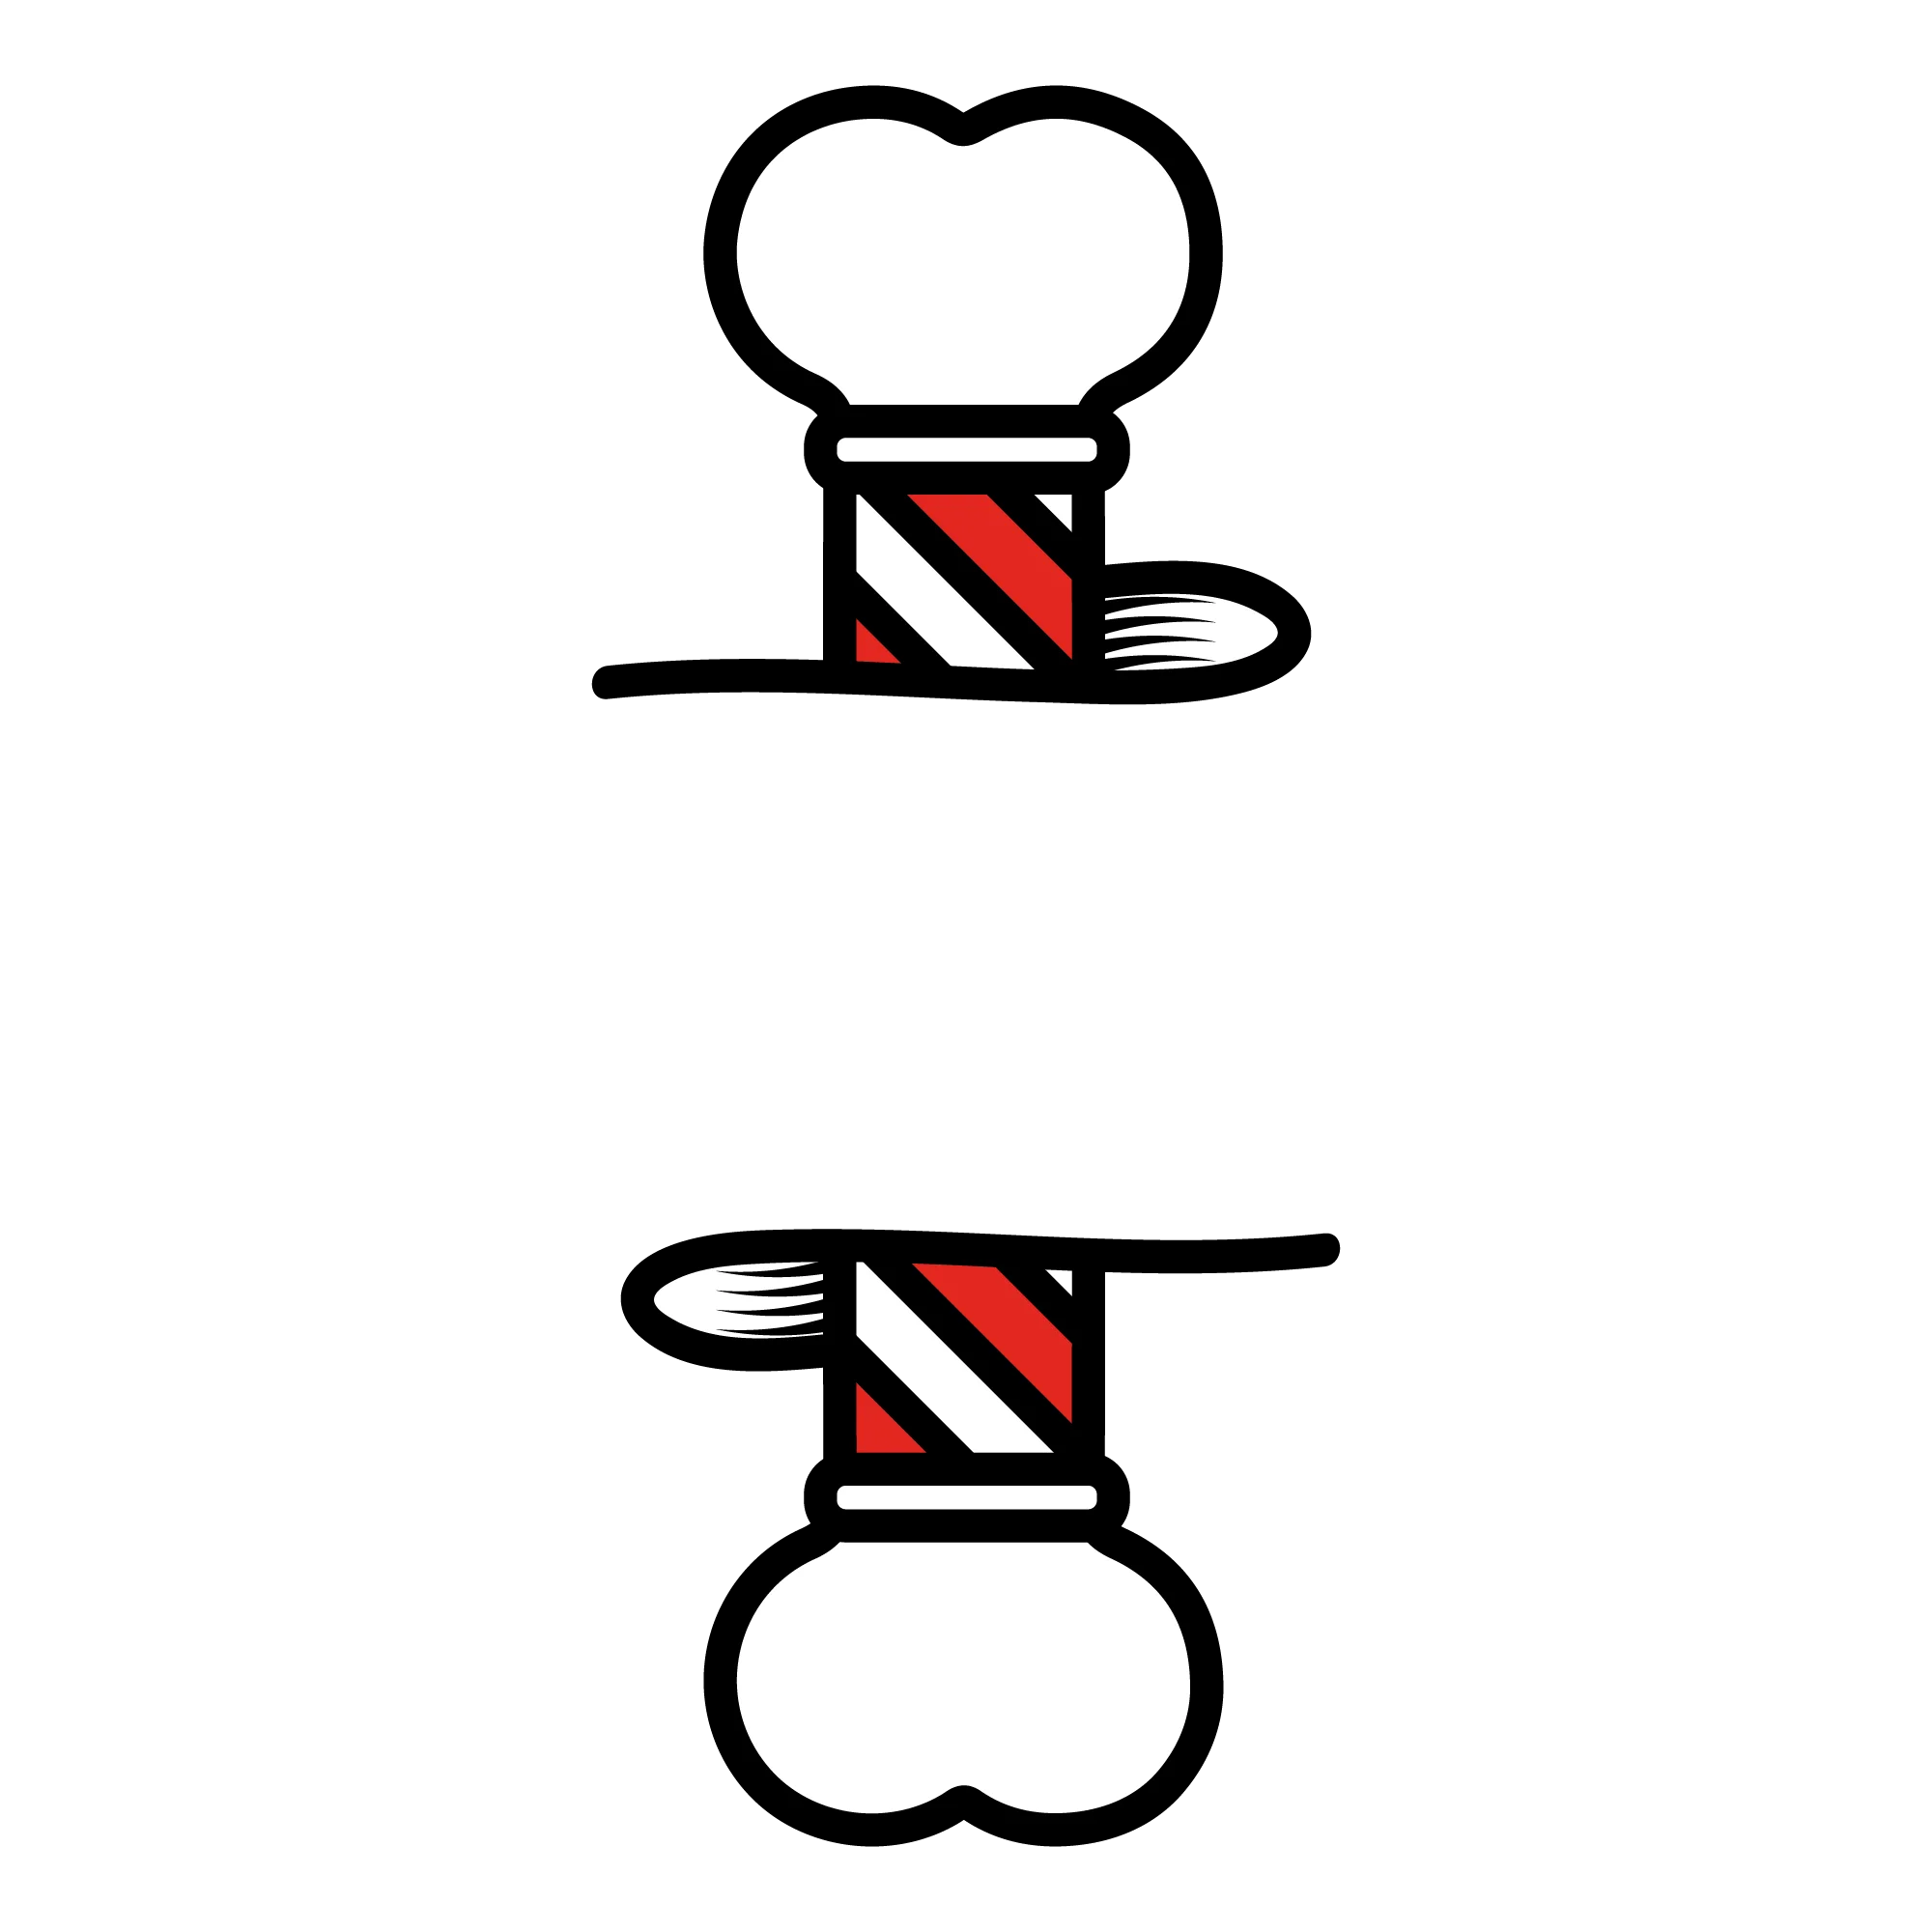 barking barber logo - Platform Media